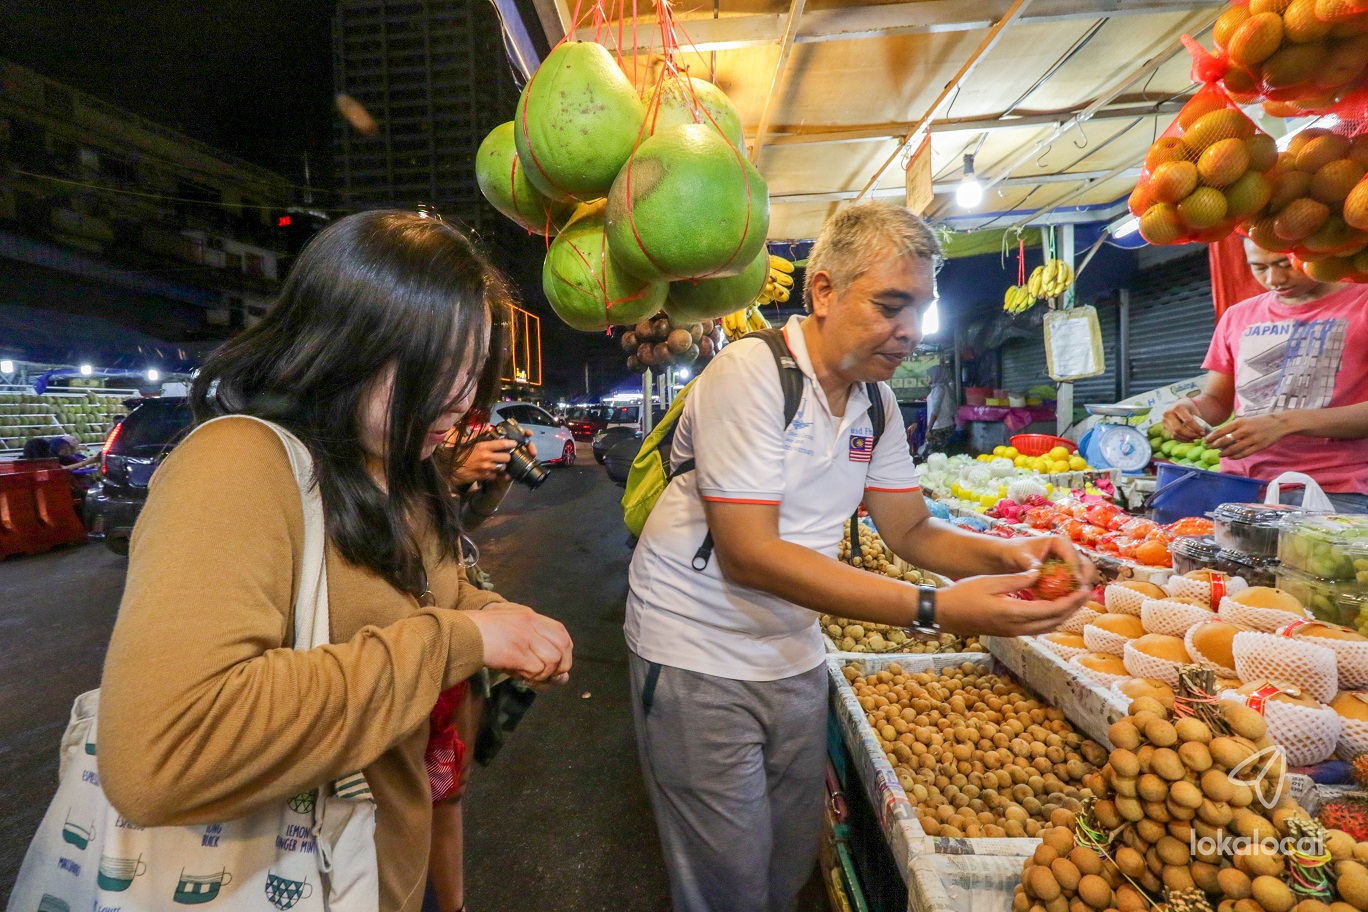 当地居民Fuad将带领大家走访甘榜峇鲁，向大家介绍独特的马来文化、饮食文化等等。-图取自LokaLocal官网-